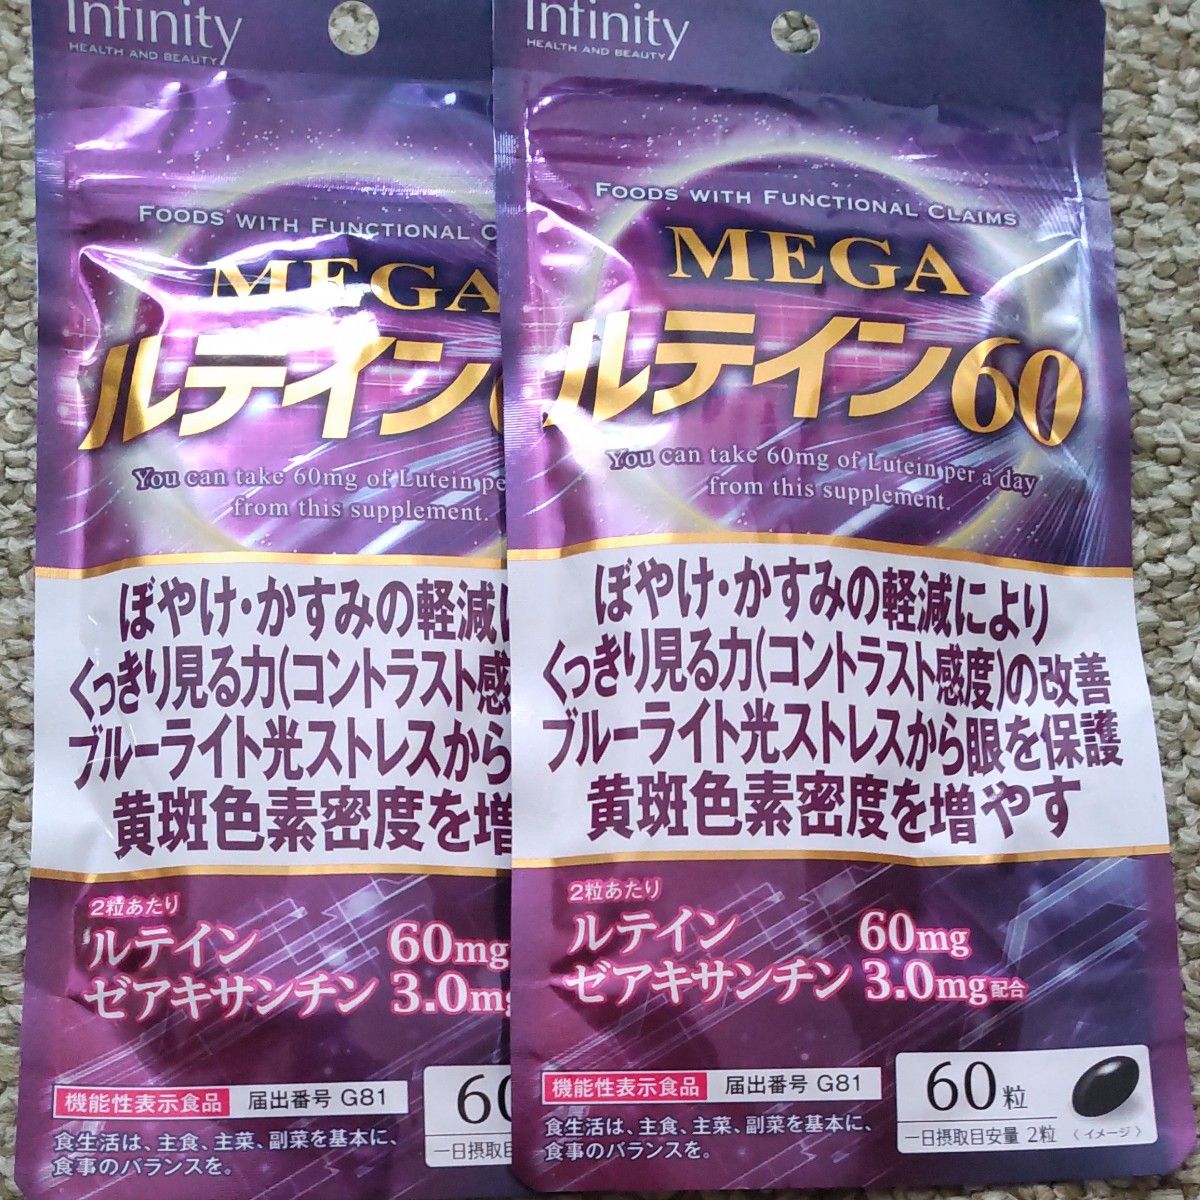 ボーテサンテラボラトリーズ インフィニティー MEGA ルテイン60 (60粒) 機能性表示食品　２袋